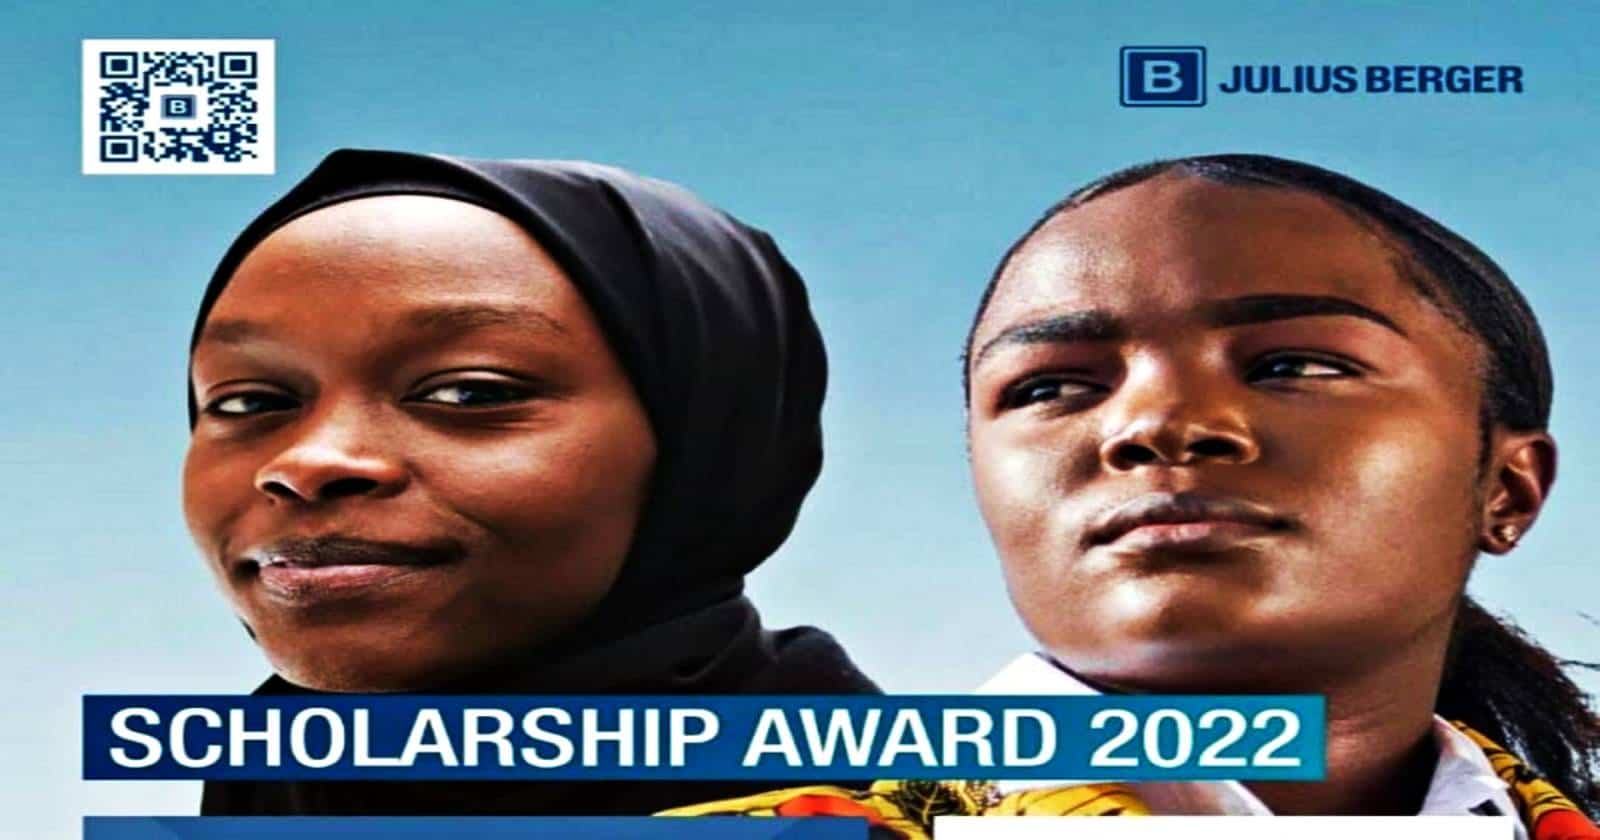 Julius Berger Nigeria Scholarship